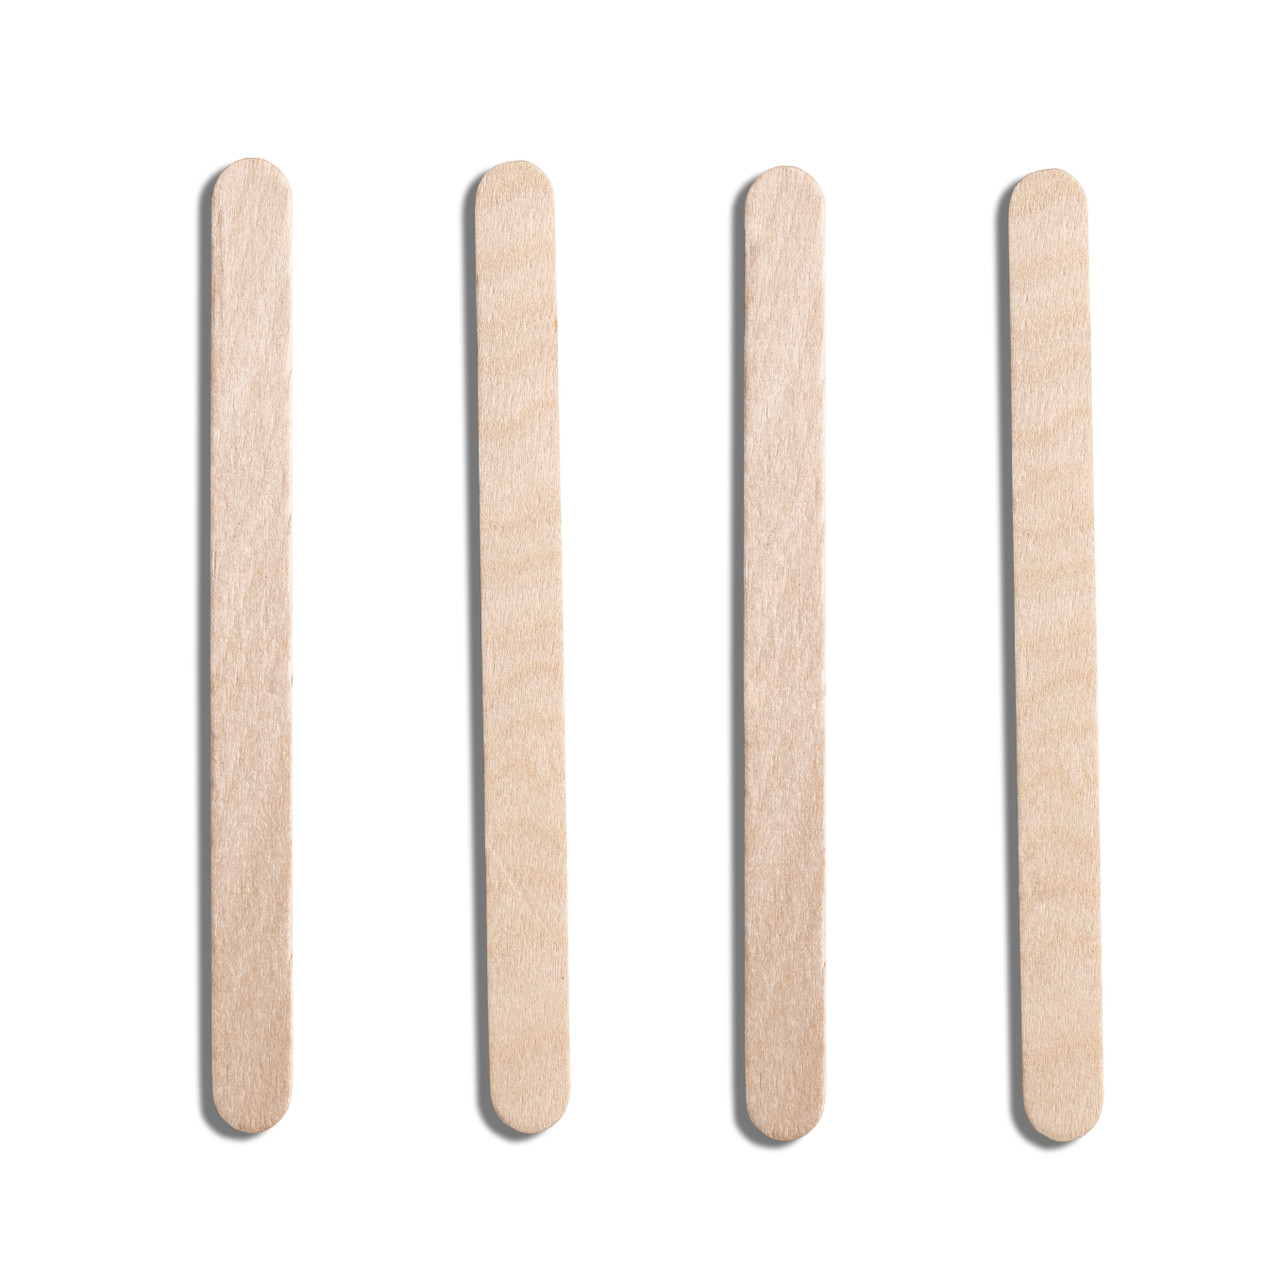 Birchwood (115mm/4.5'') Lolly Sticks